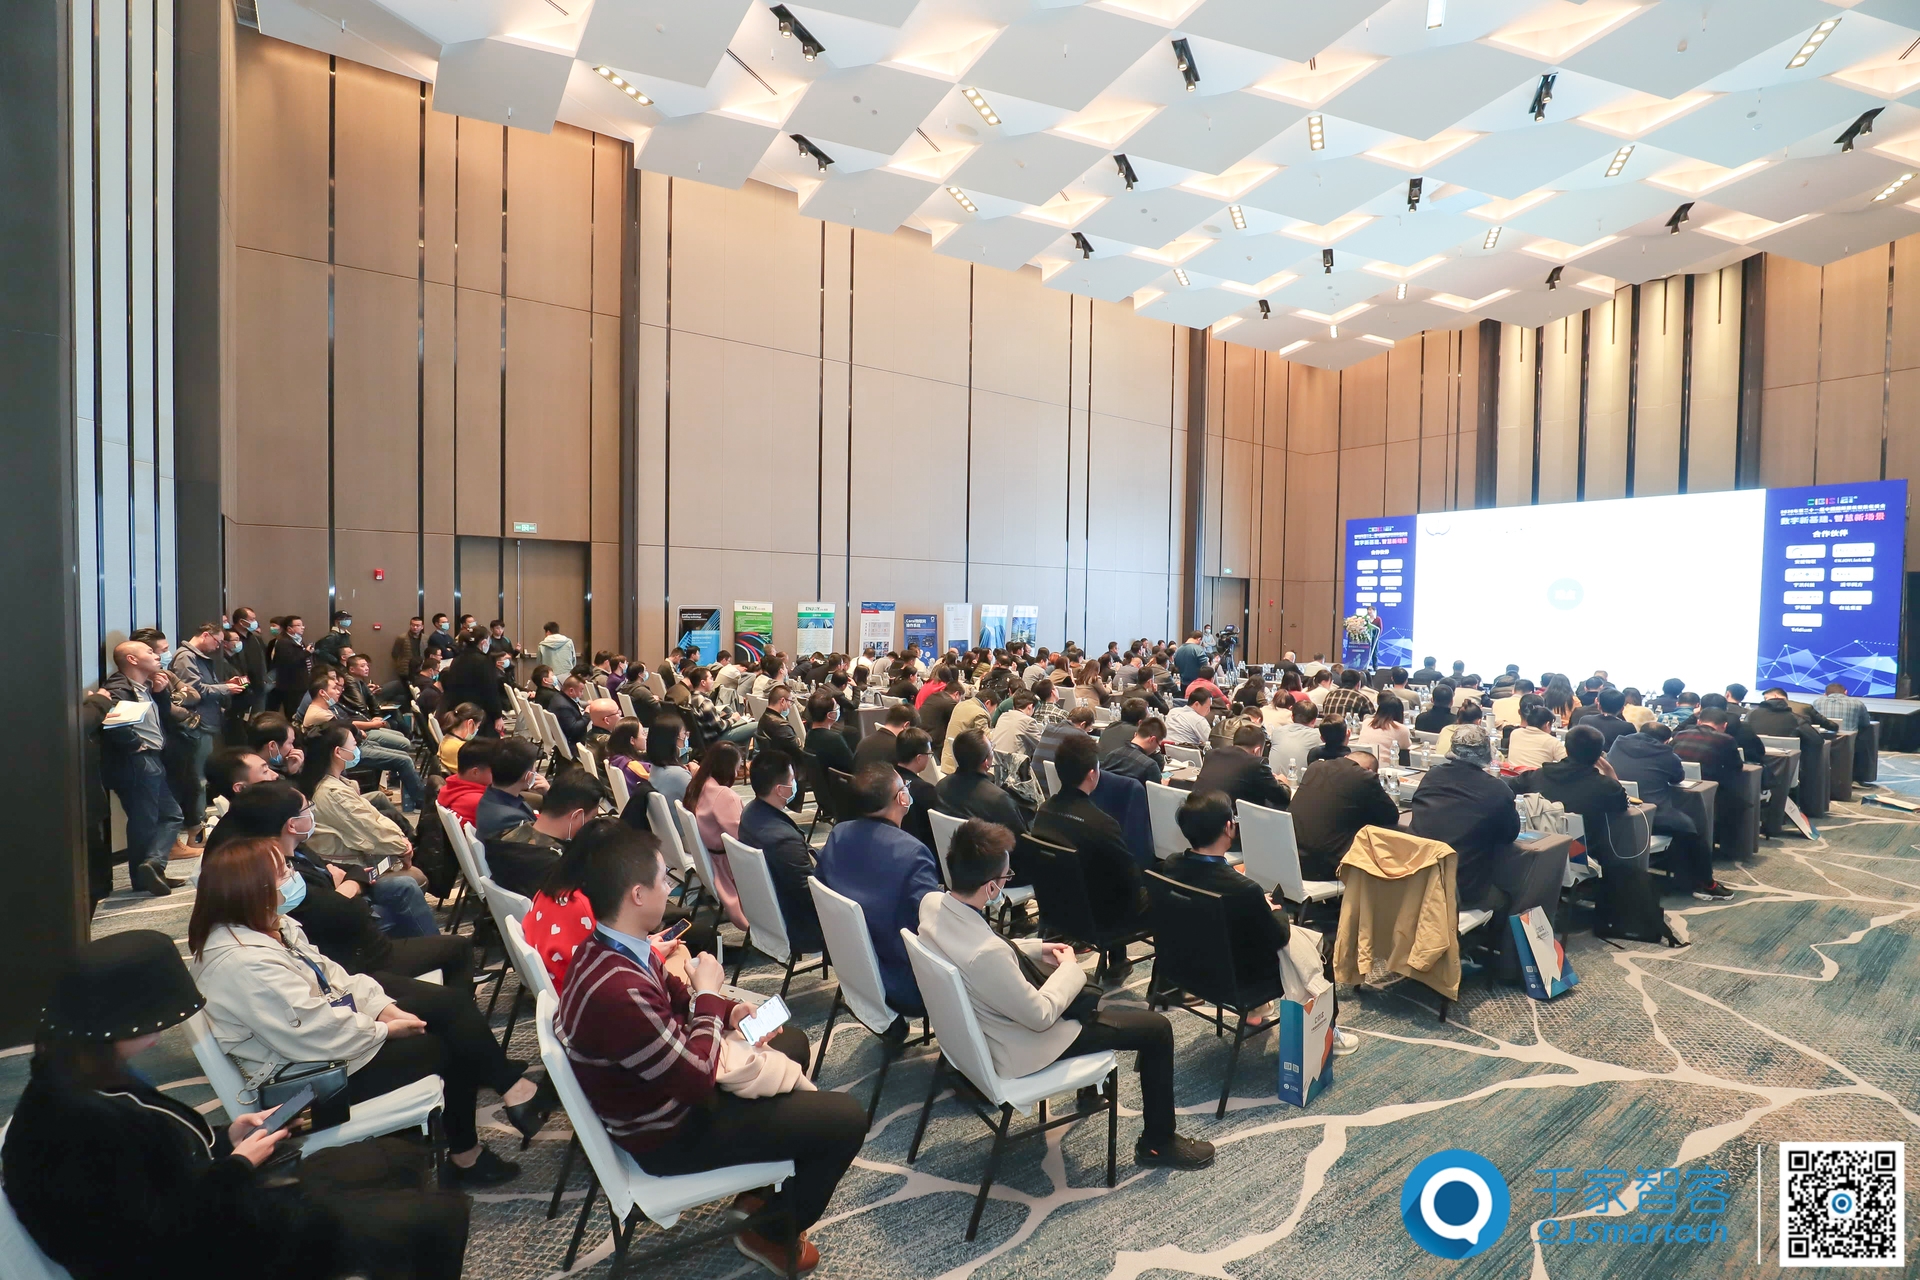 产业风向标！2020第二十一届中国国际建筑智能化峰会西安站盛大开幕